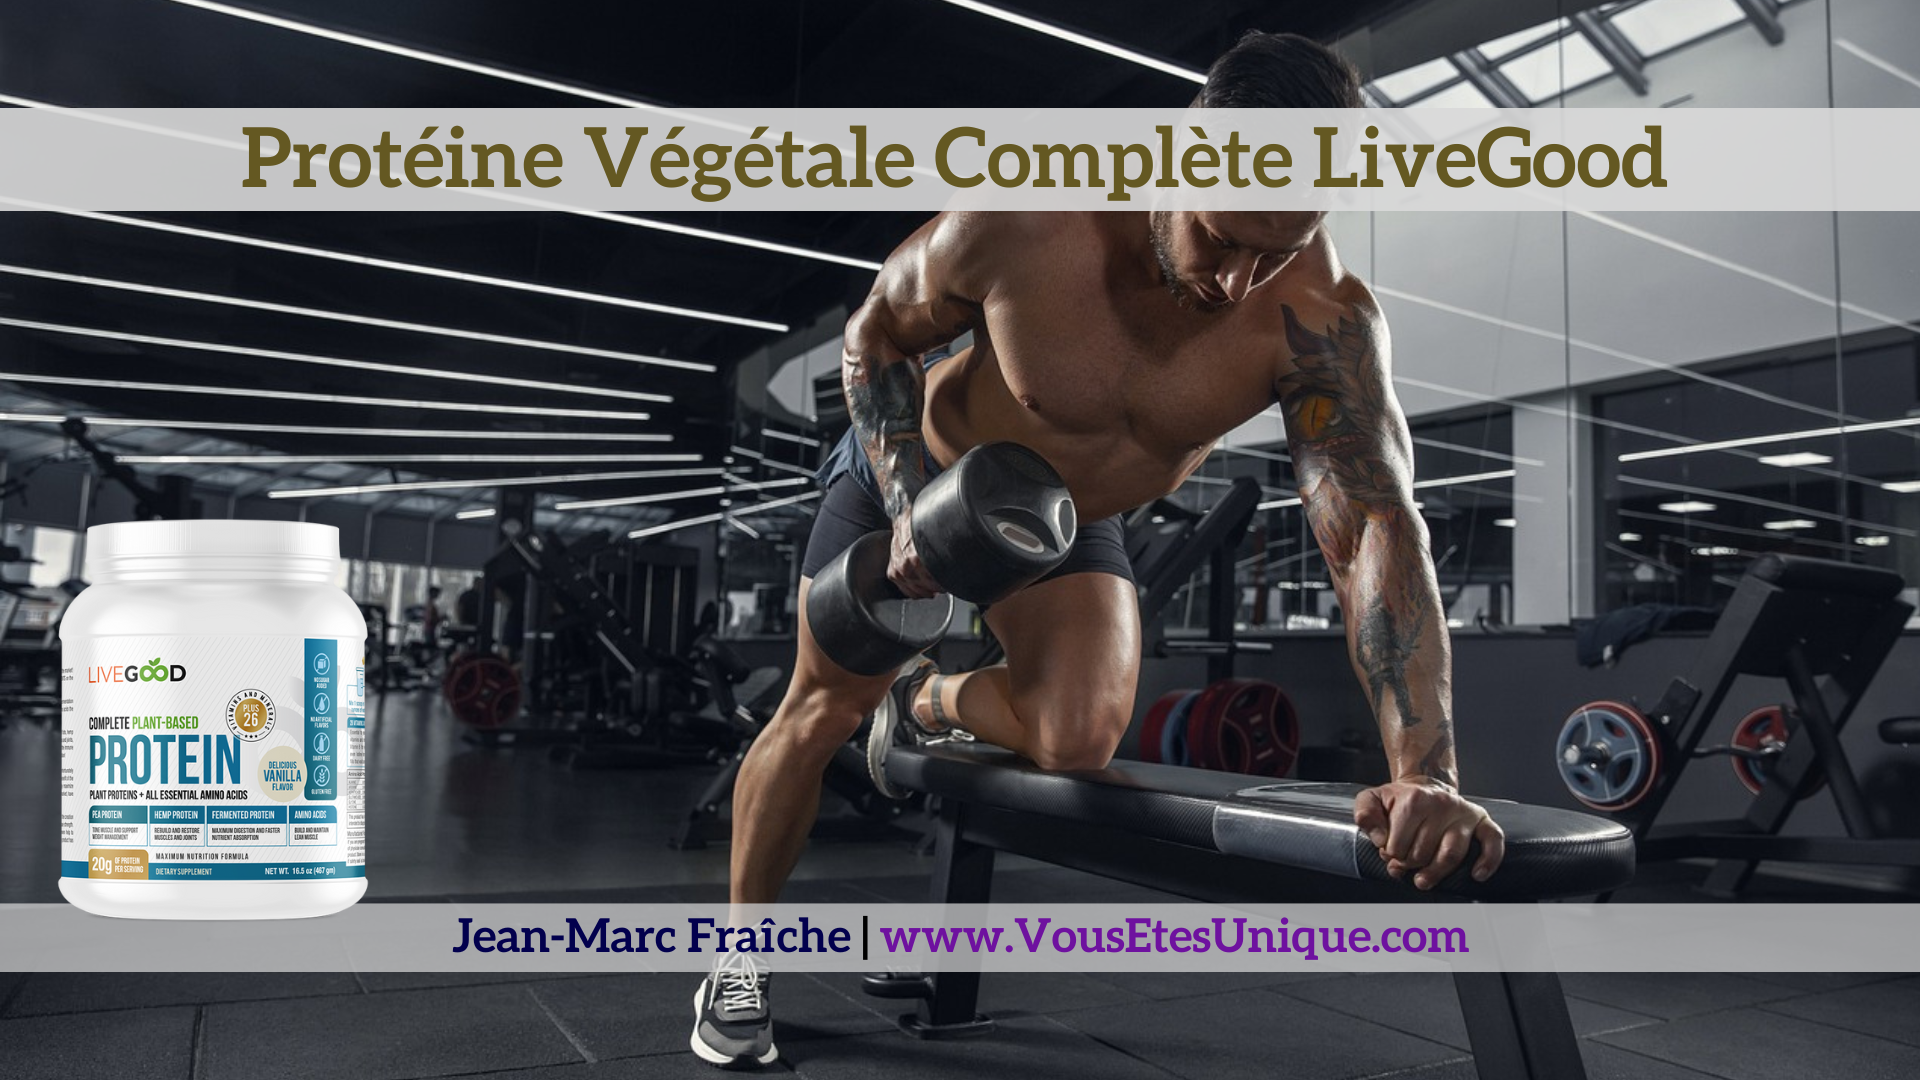 Proteine-vegetale-LiveGood-Jean-Marc-Fraiche-VousEtesUnique.com